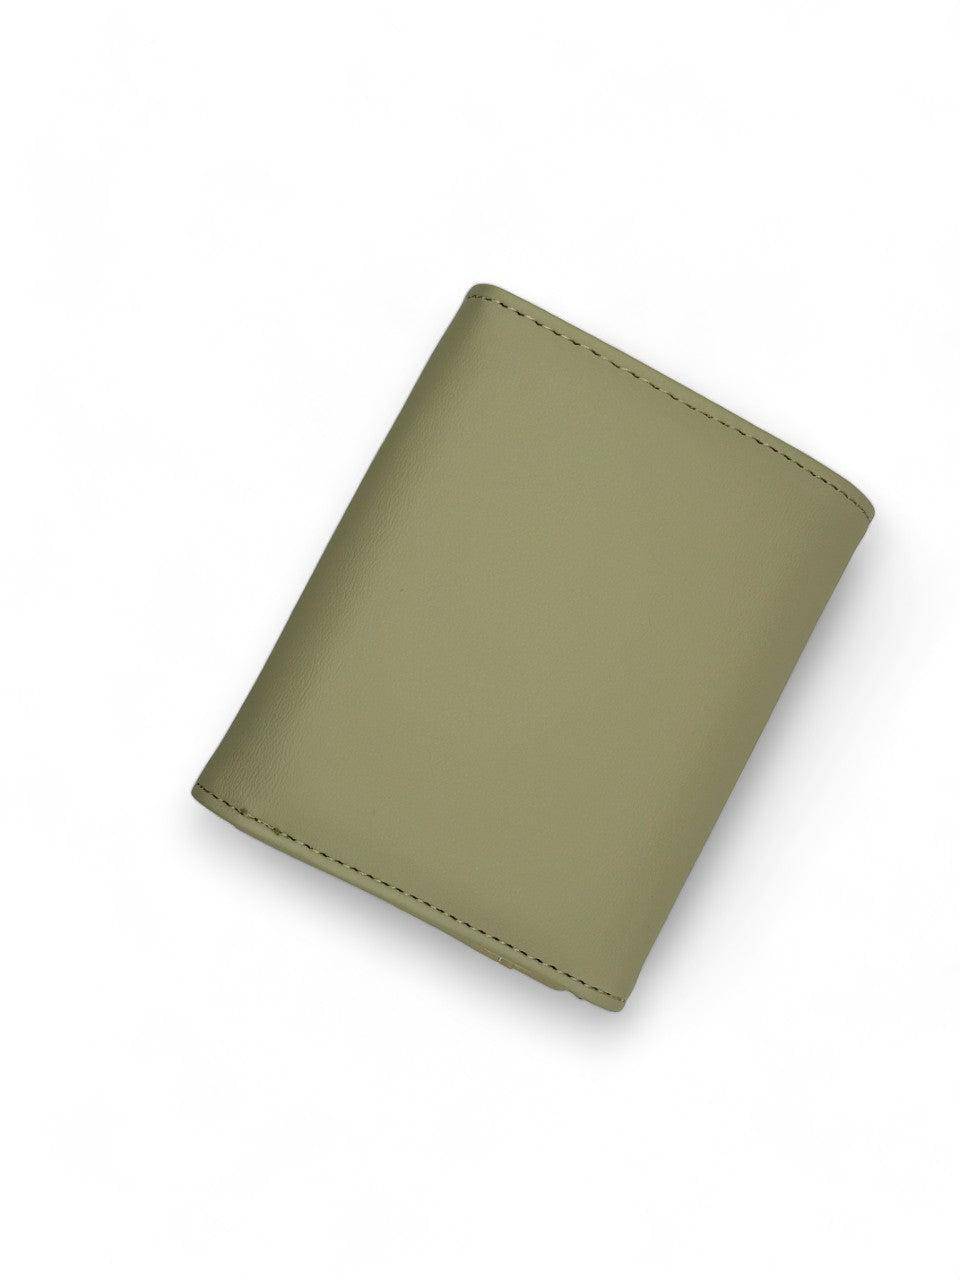 محفظة نسائية باللون الاخضر بتصميم بسيط وحجم مناسب - KSA